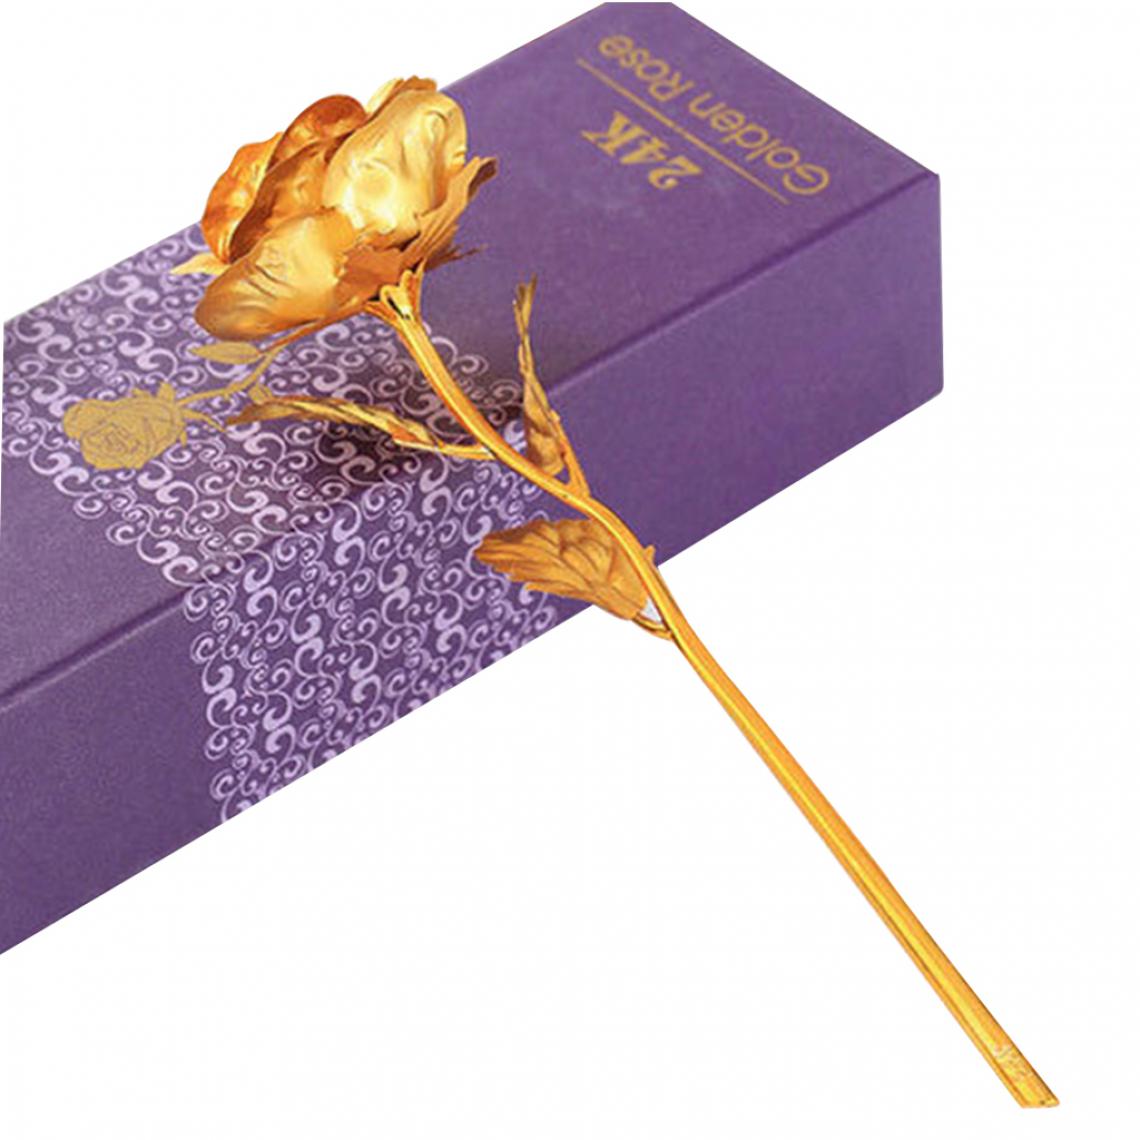 marque generique - 24K Or Forever Rose Fleur Artificielle Trempée Cadeau De La Saint-Valentin Pour Son Or - Plantes et fleurs artificielles